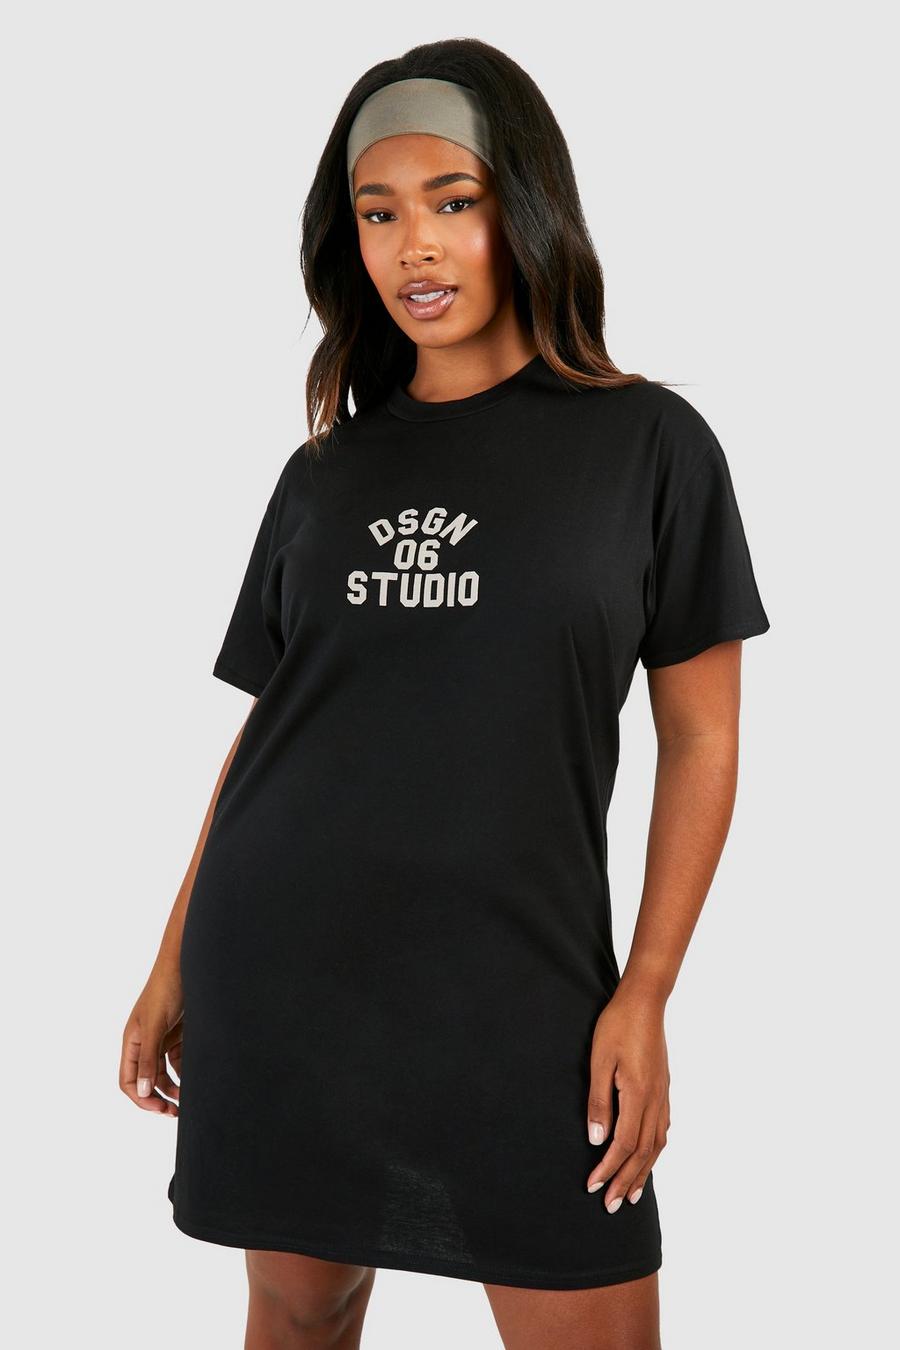 Vestito T-shirt Plus Size con stampa Dsgn Studio, Black